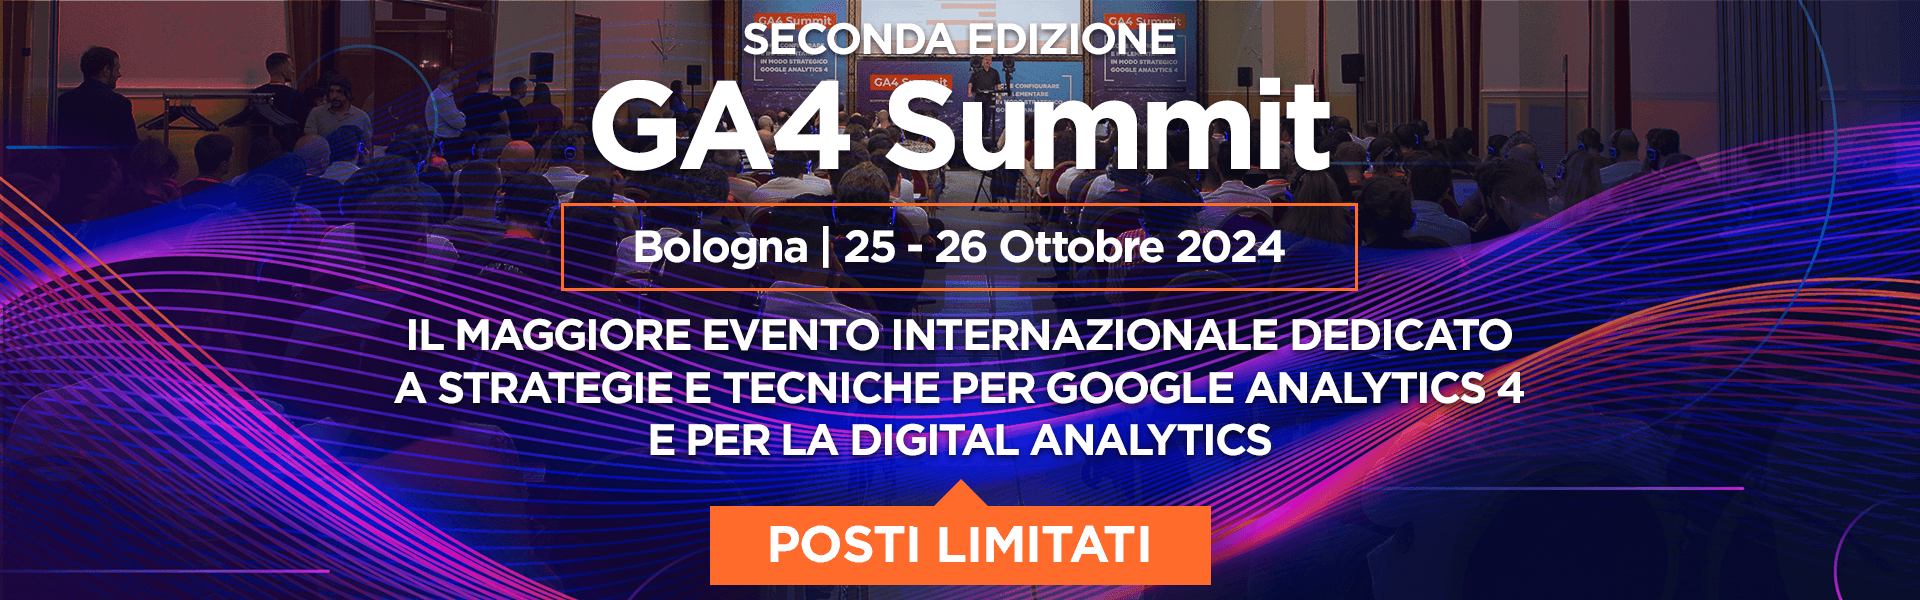 GA4 Summit 2024 - il maggiore evento internazionale dedicato a strategie e tecniche per google analytics 4